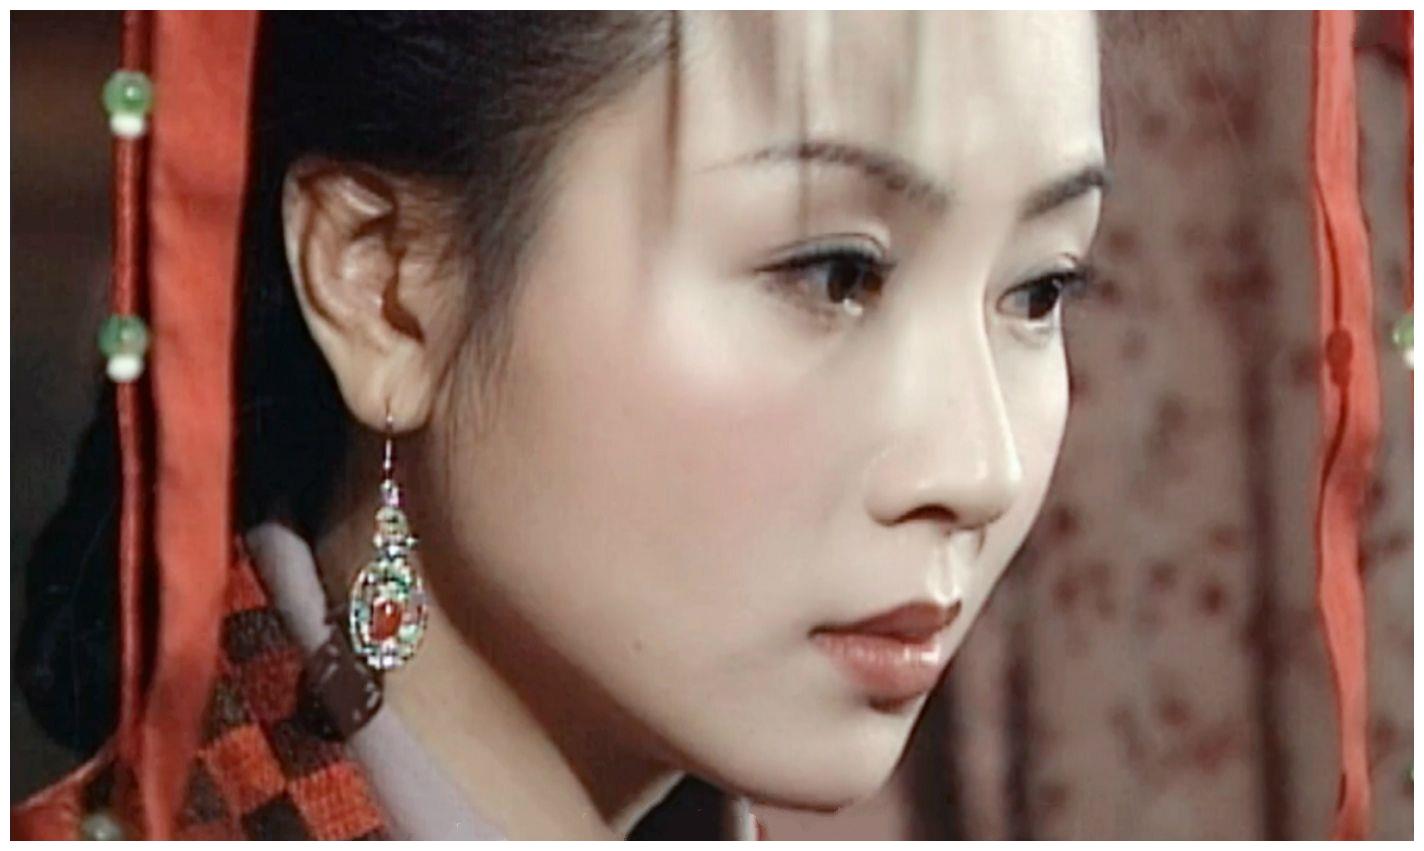 不知道大家有没有看过19年前的《人龙传说,是有陈浩民和袁洁莹主演